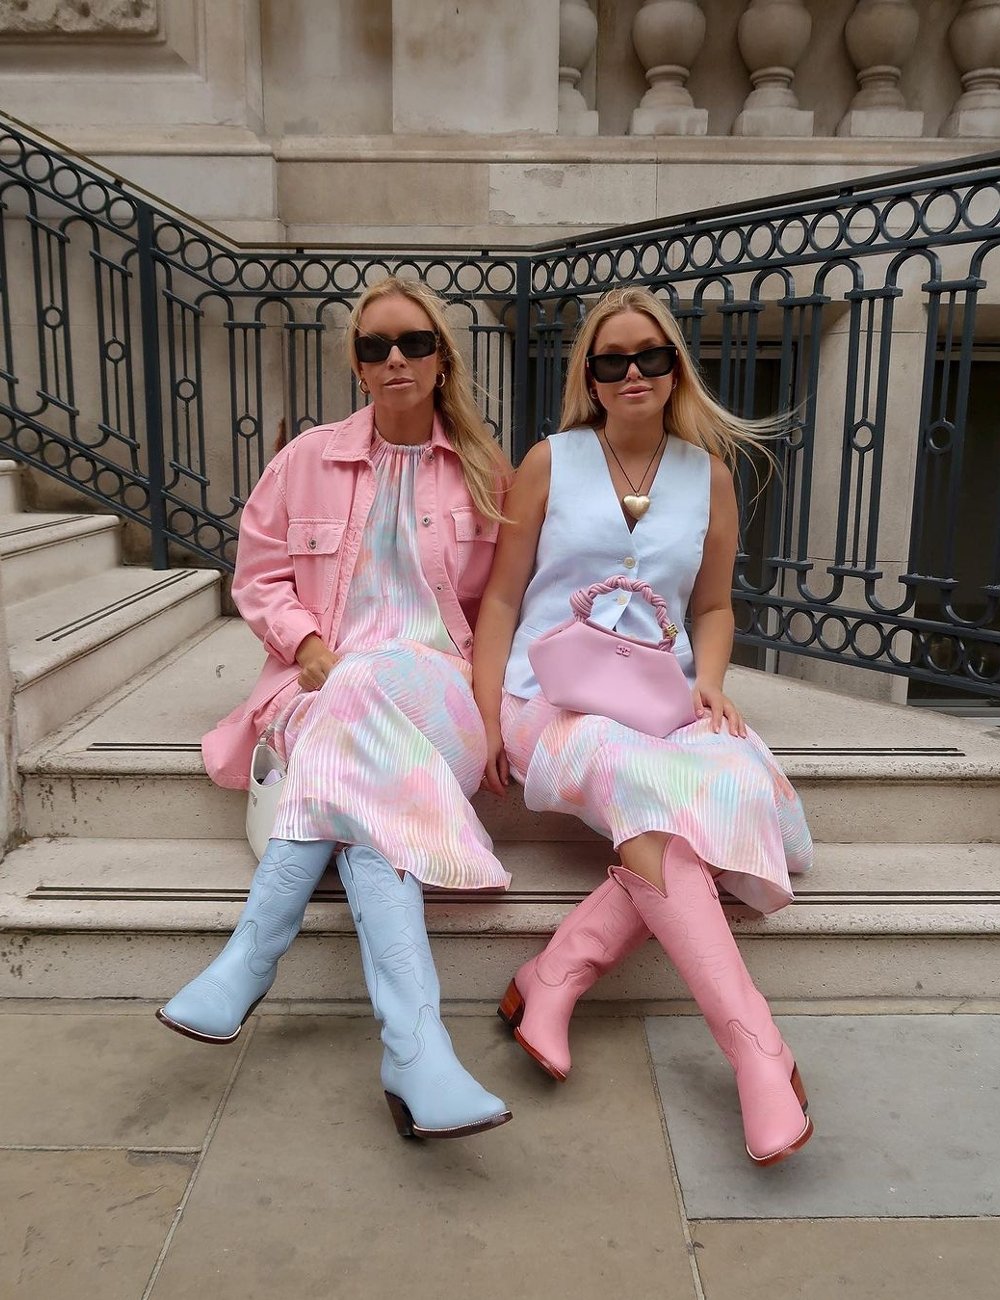 Duas mulheres sentadas usam vestidos claros e coloridos, sendo um complementado com jaqueta rosa. Ambas vestem sapatos coloridos e óculos escuros retrô. Bolsas em tons coordenados completam o look moderno e estiloso.